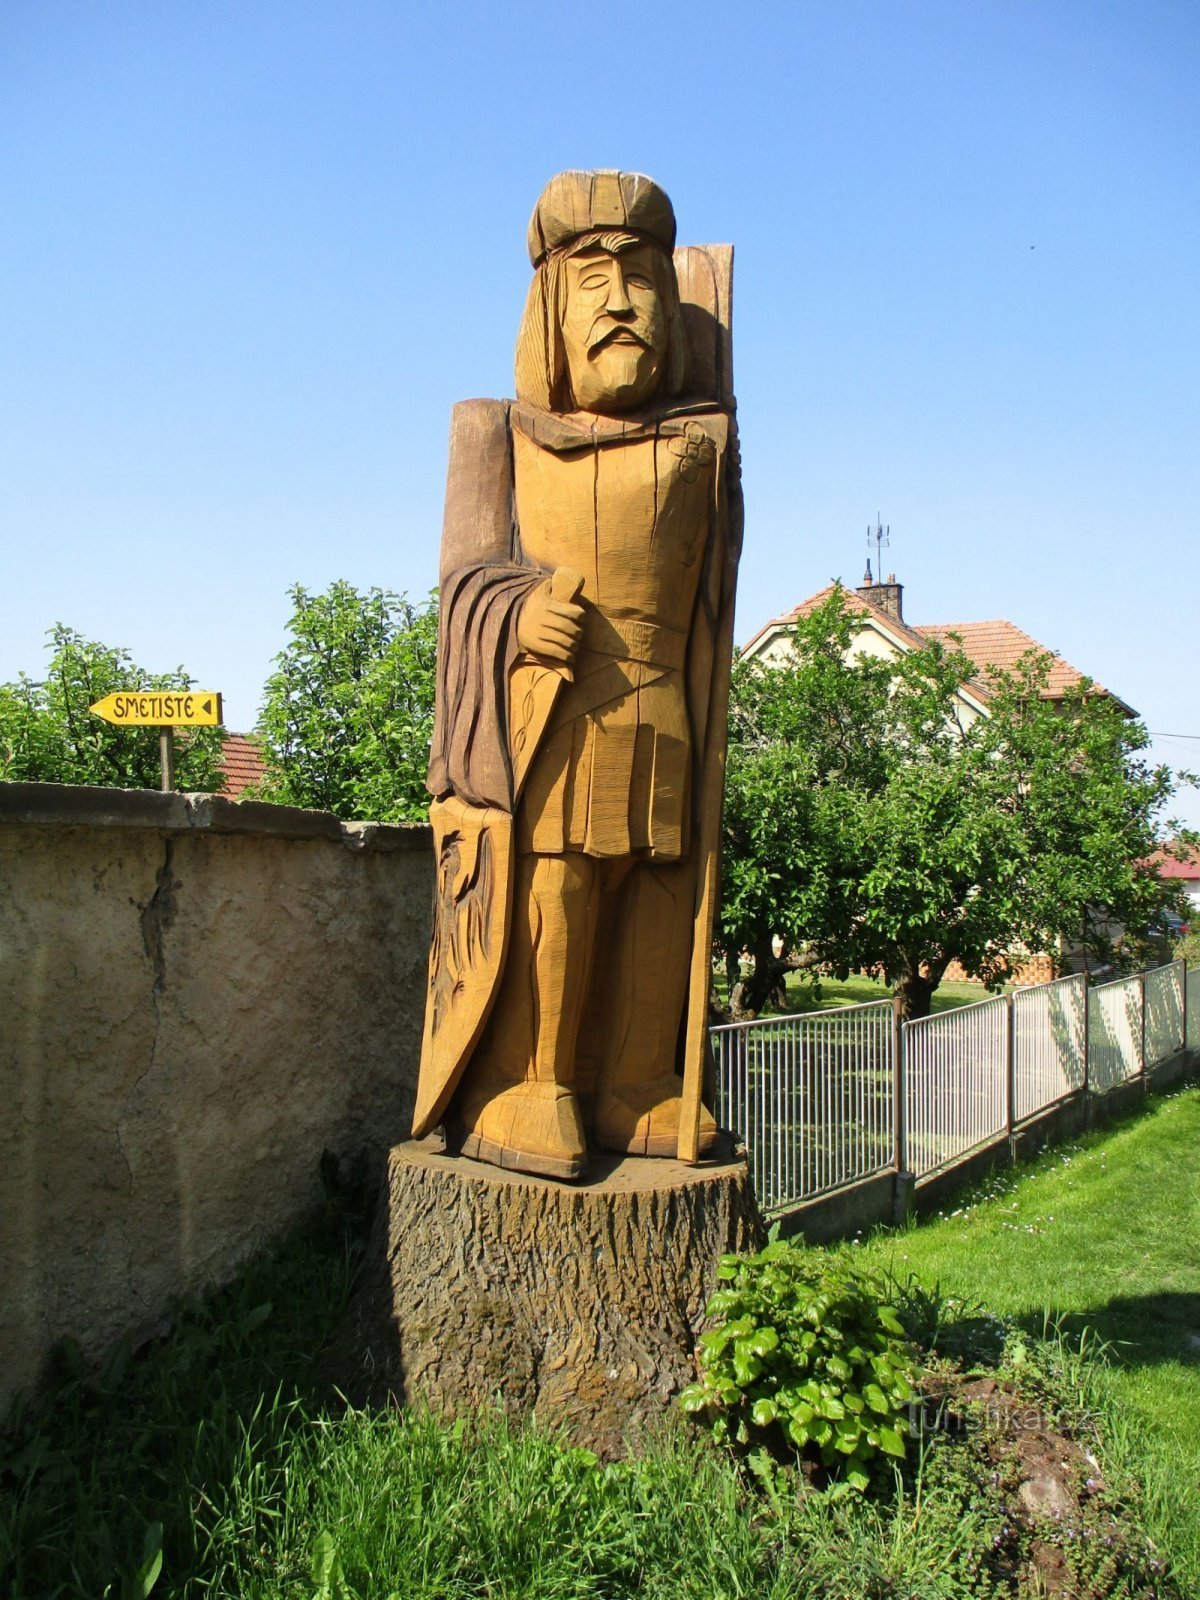 Chạm khắc gỗ tại nhà thờ (Horní Ředice, 16.5.2020/XNUMX/XNUMX)